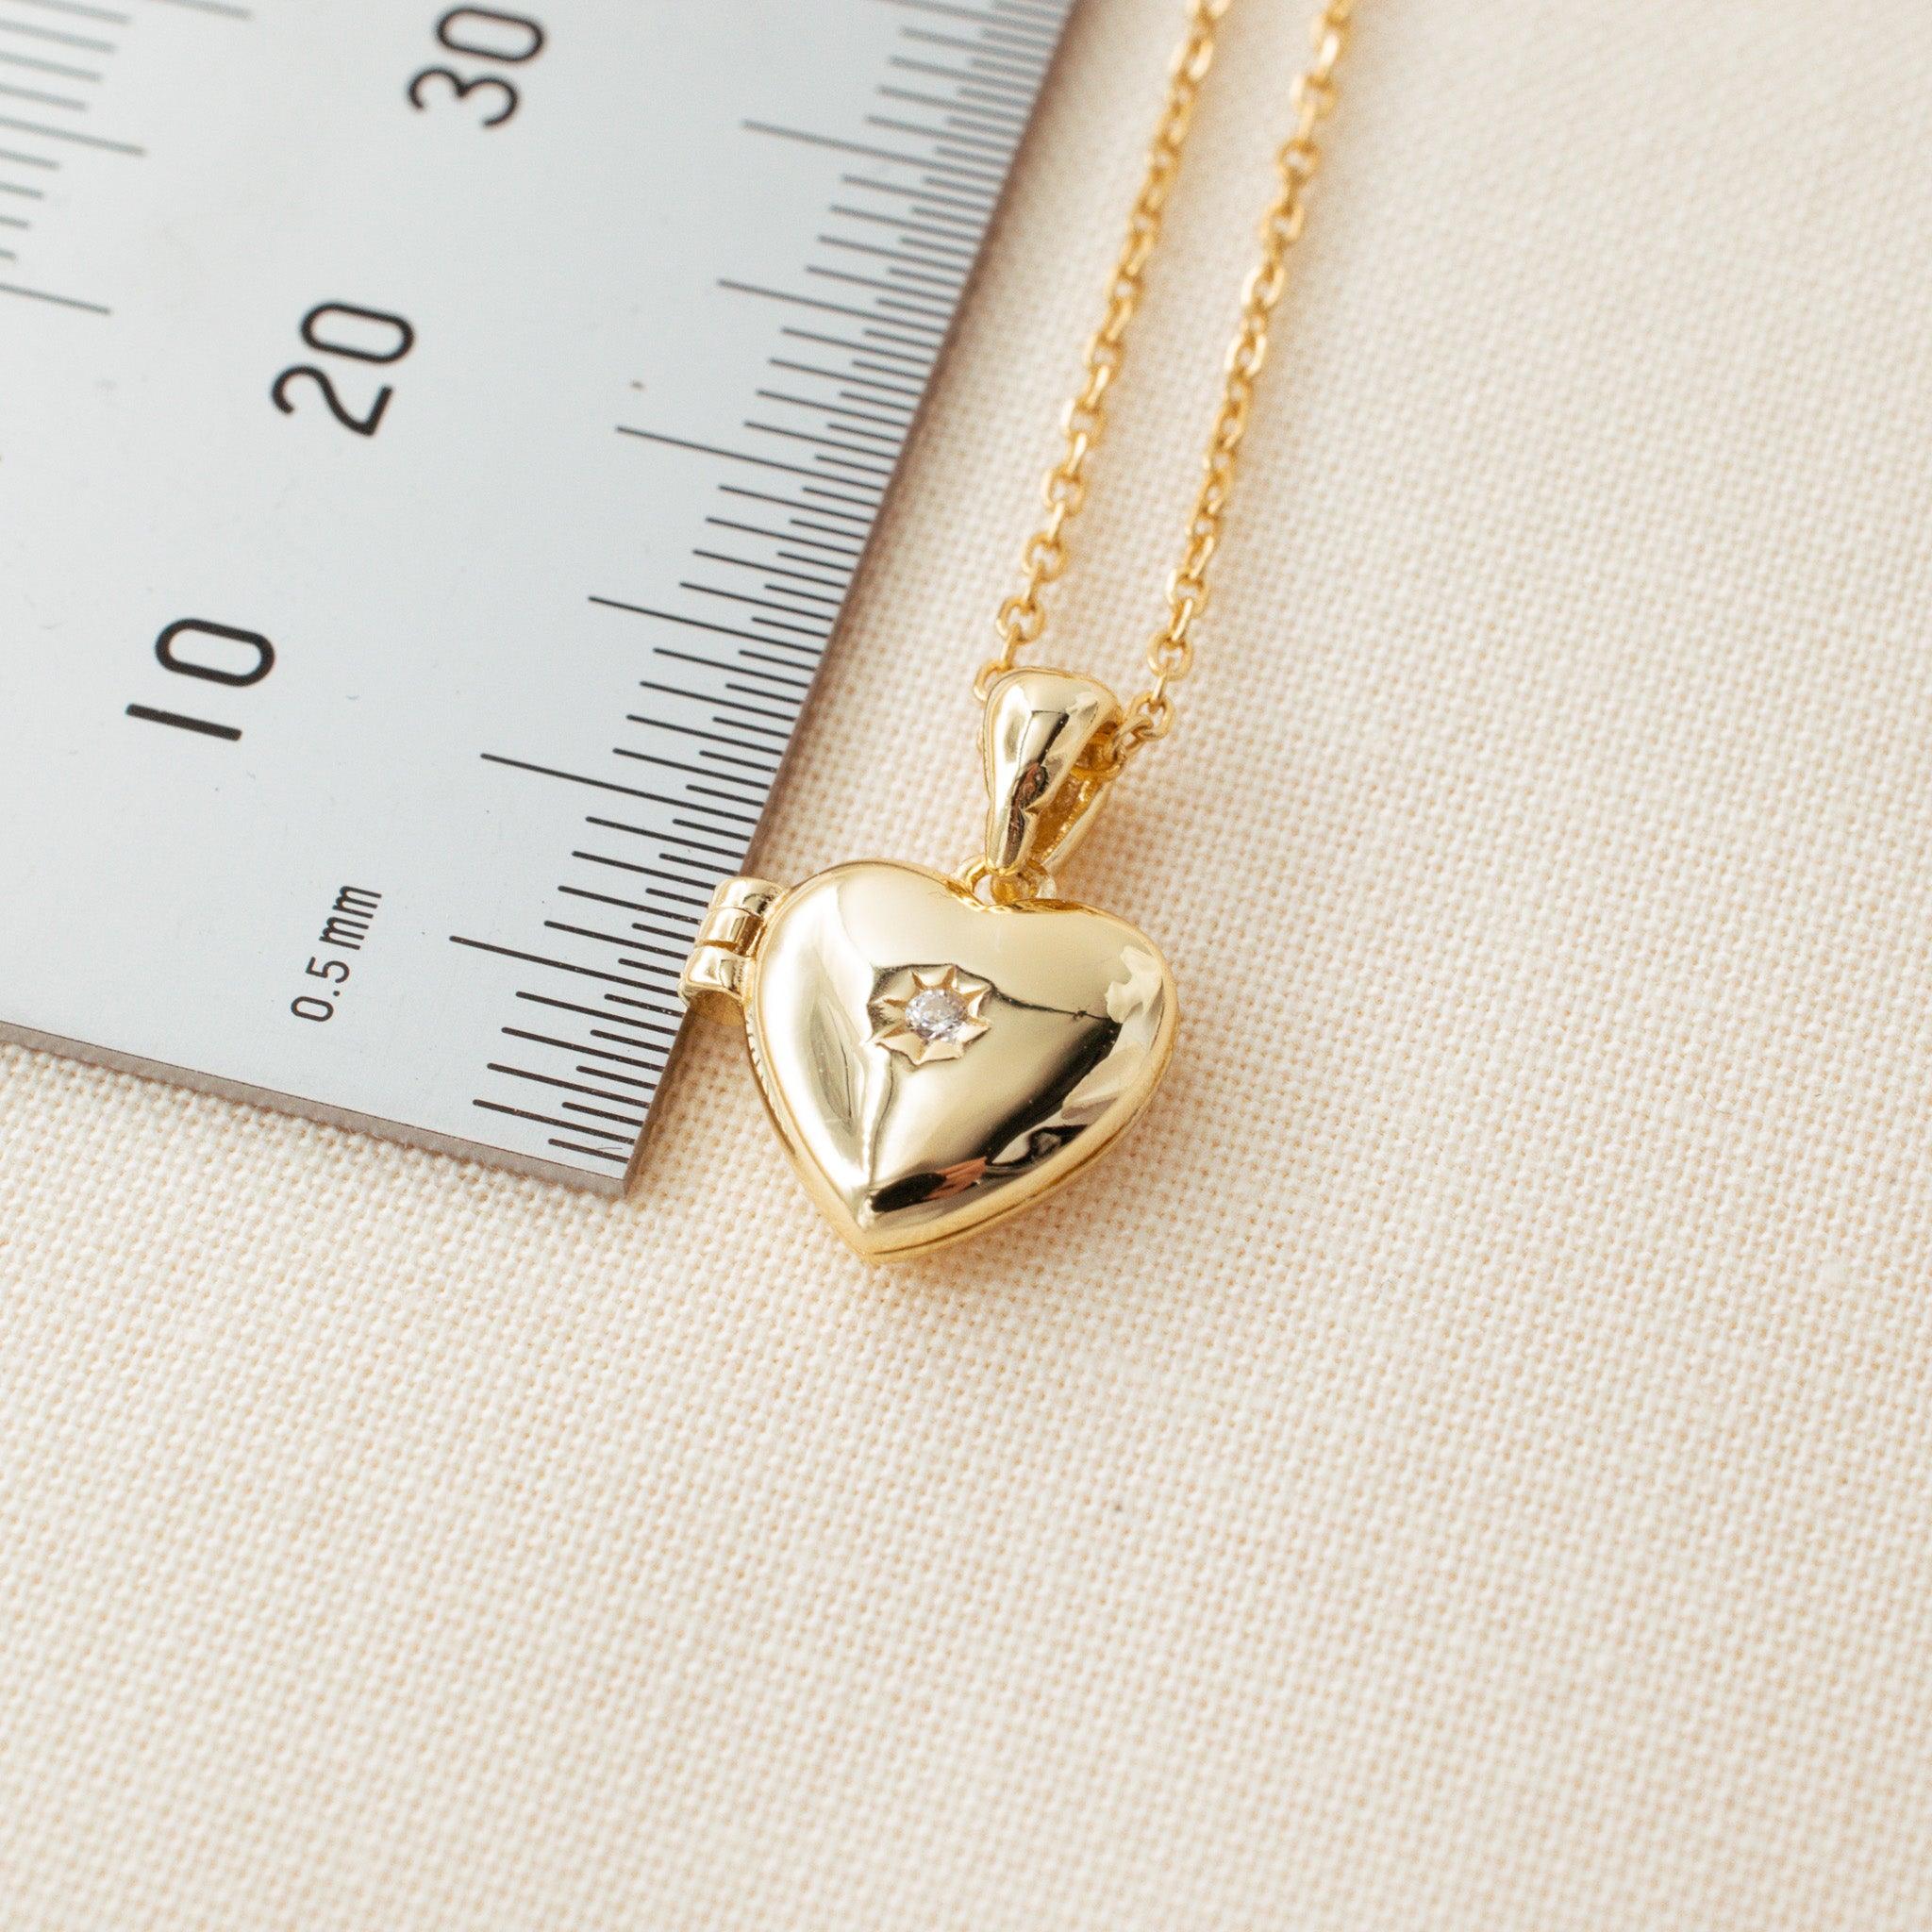 Polished Heart Locket Necklace - avantejewel.com